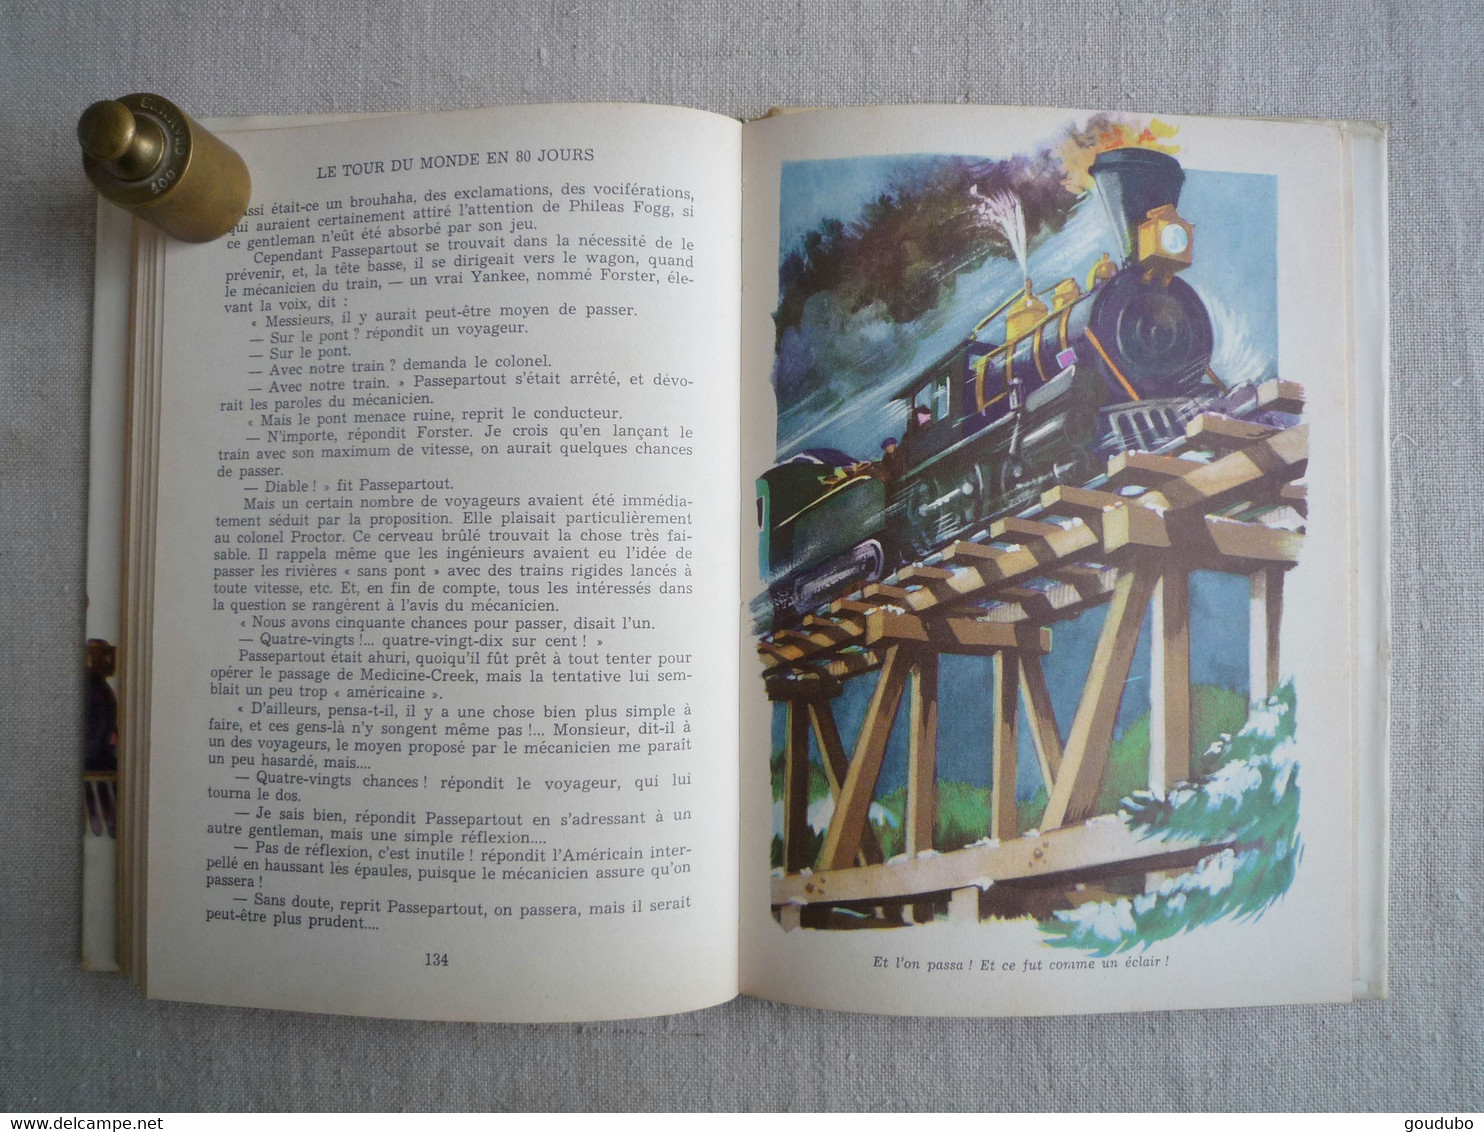 Jules Verne Le tour du monde en 80 jours Hachette 1957 Henri Dimpre Idéal bibliothèque.